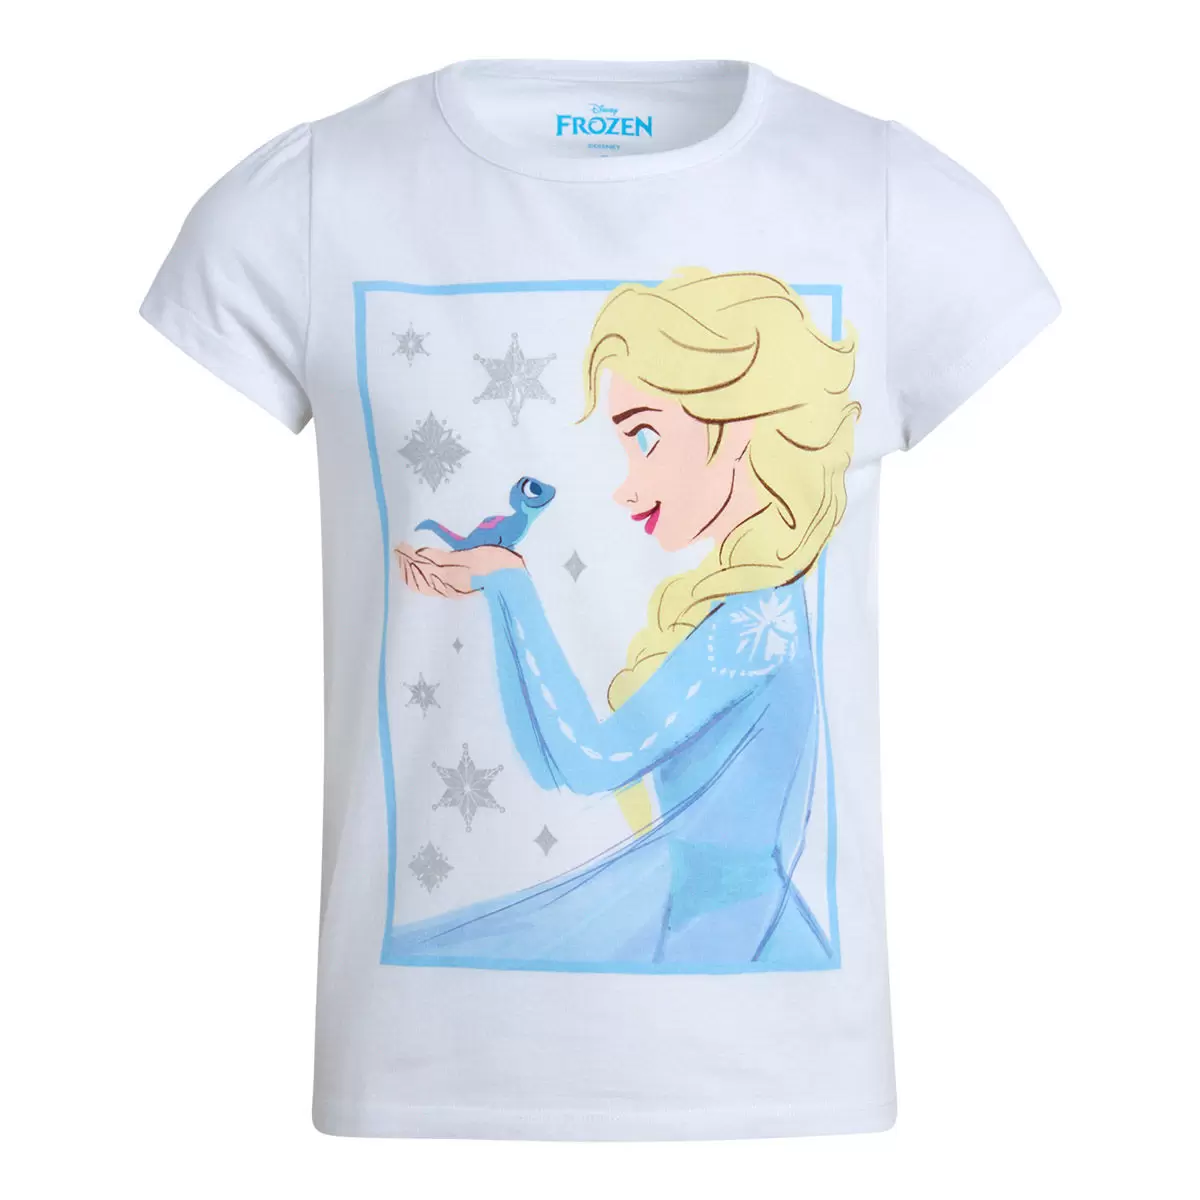 兒童卡通圖案短袖上衣四件組 Frozen 4T